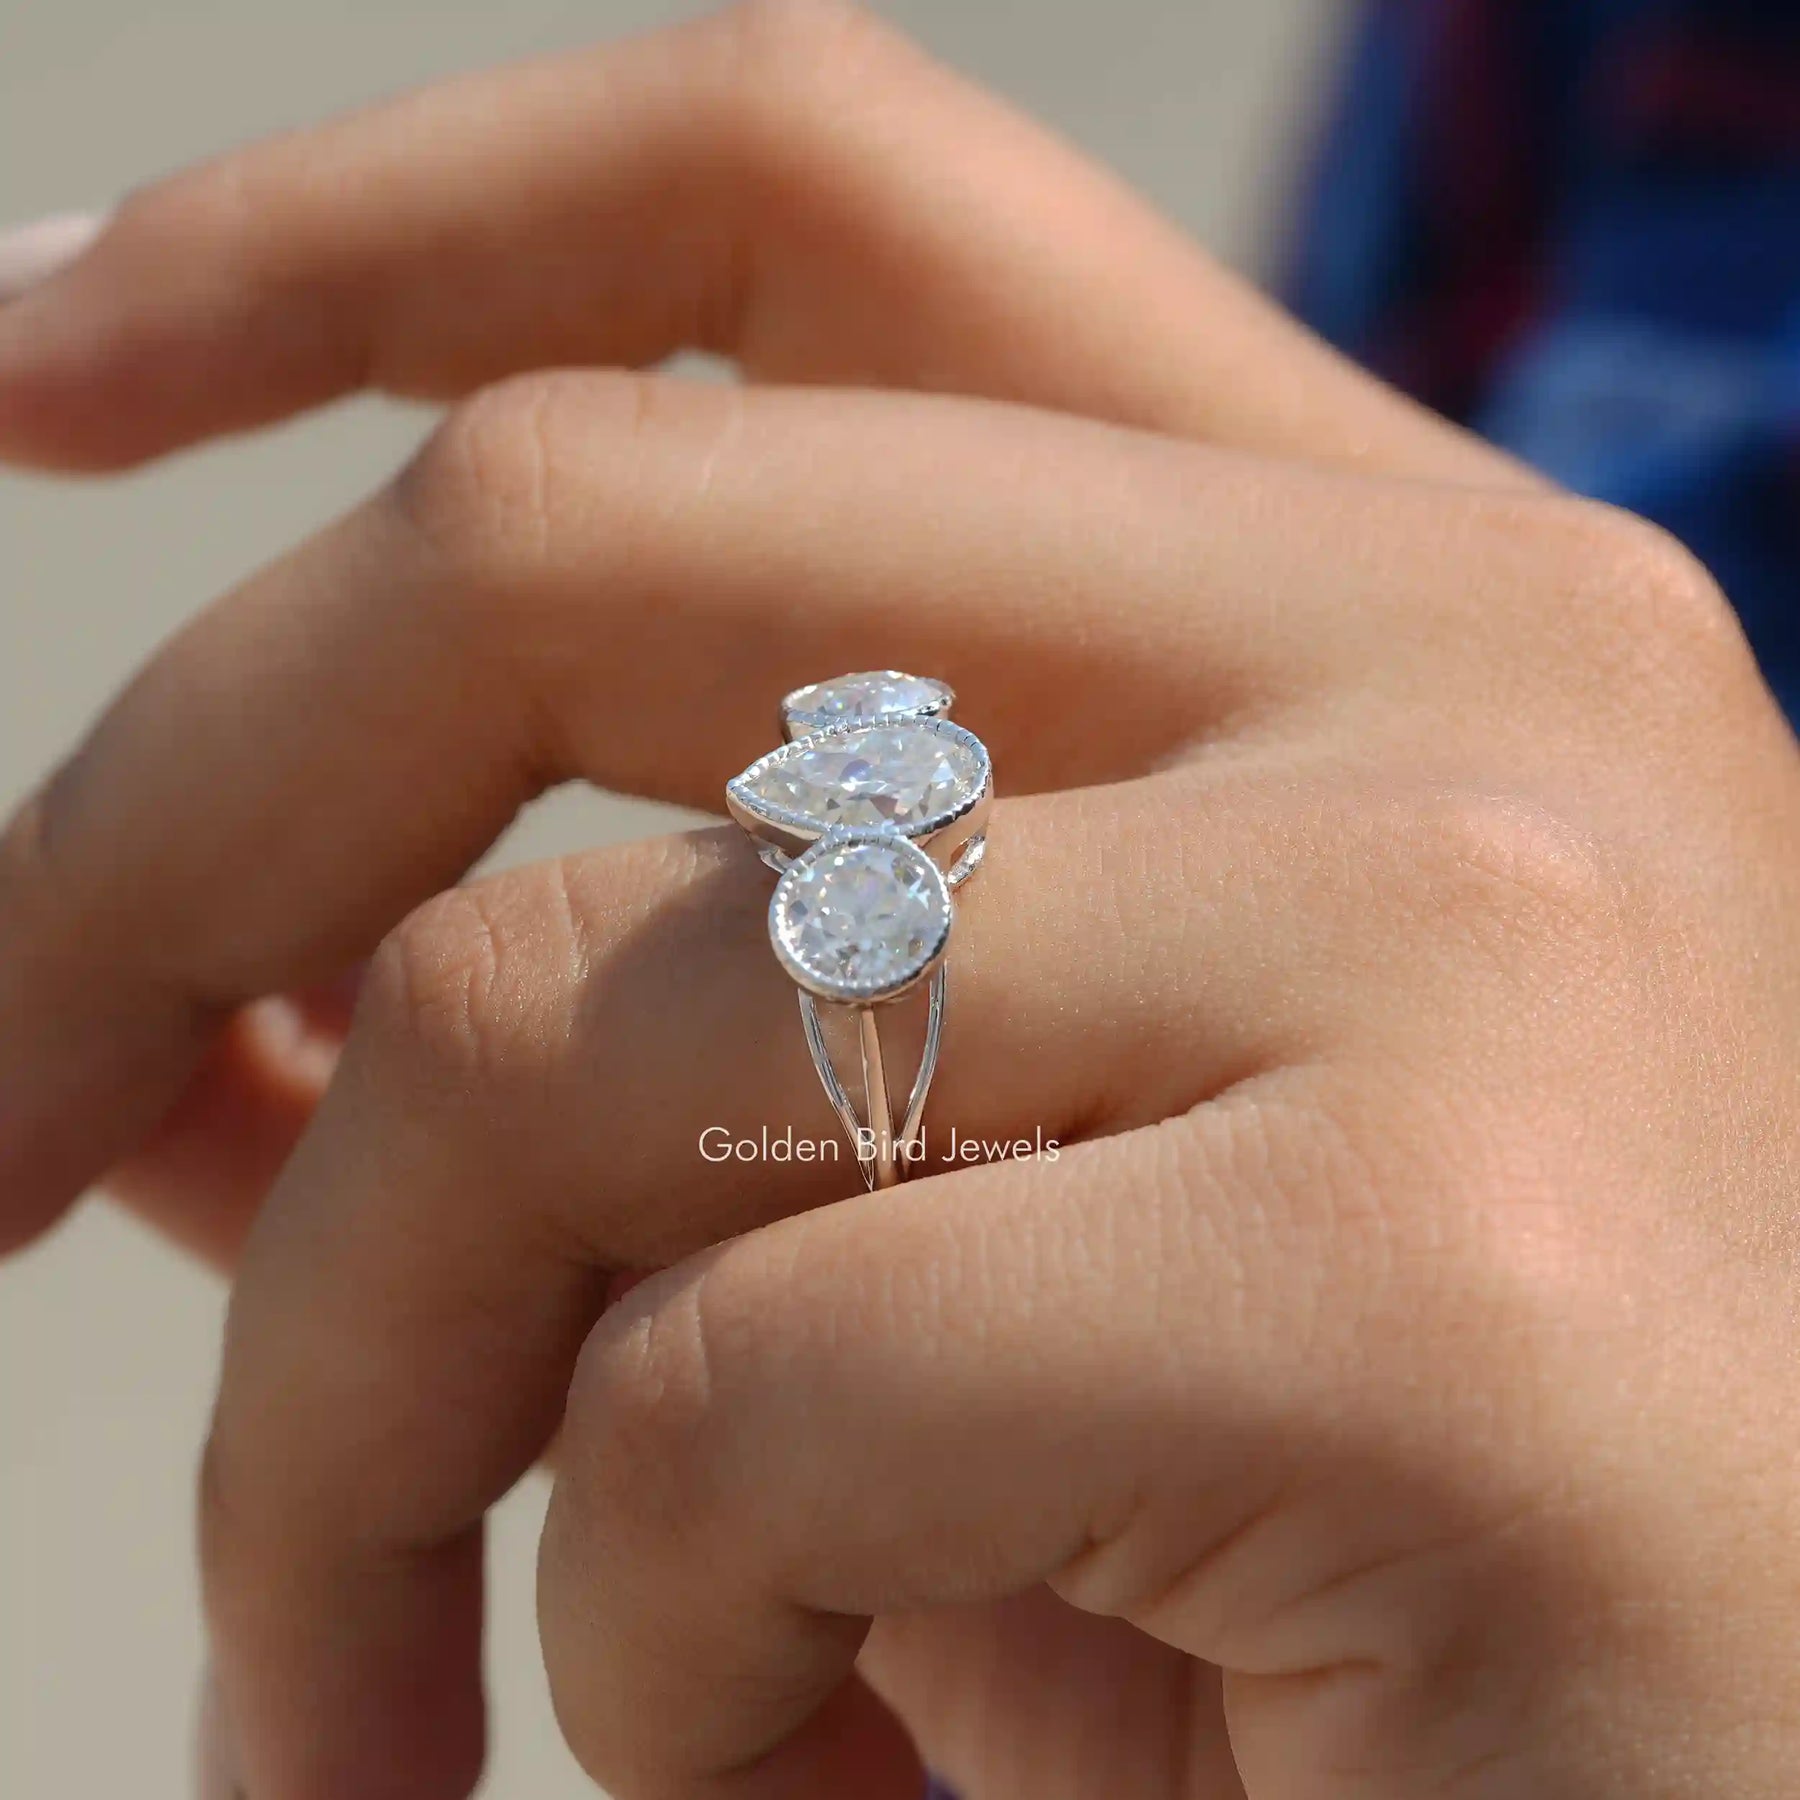 [3 Stone Moissanite Ring Made Of 18k White Gold]-[Golden Bird Jewels]